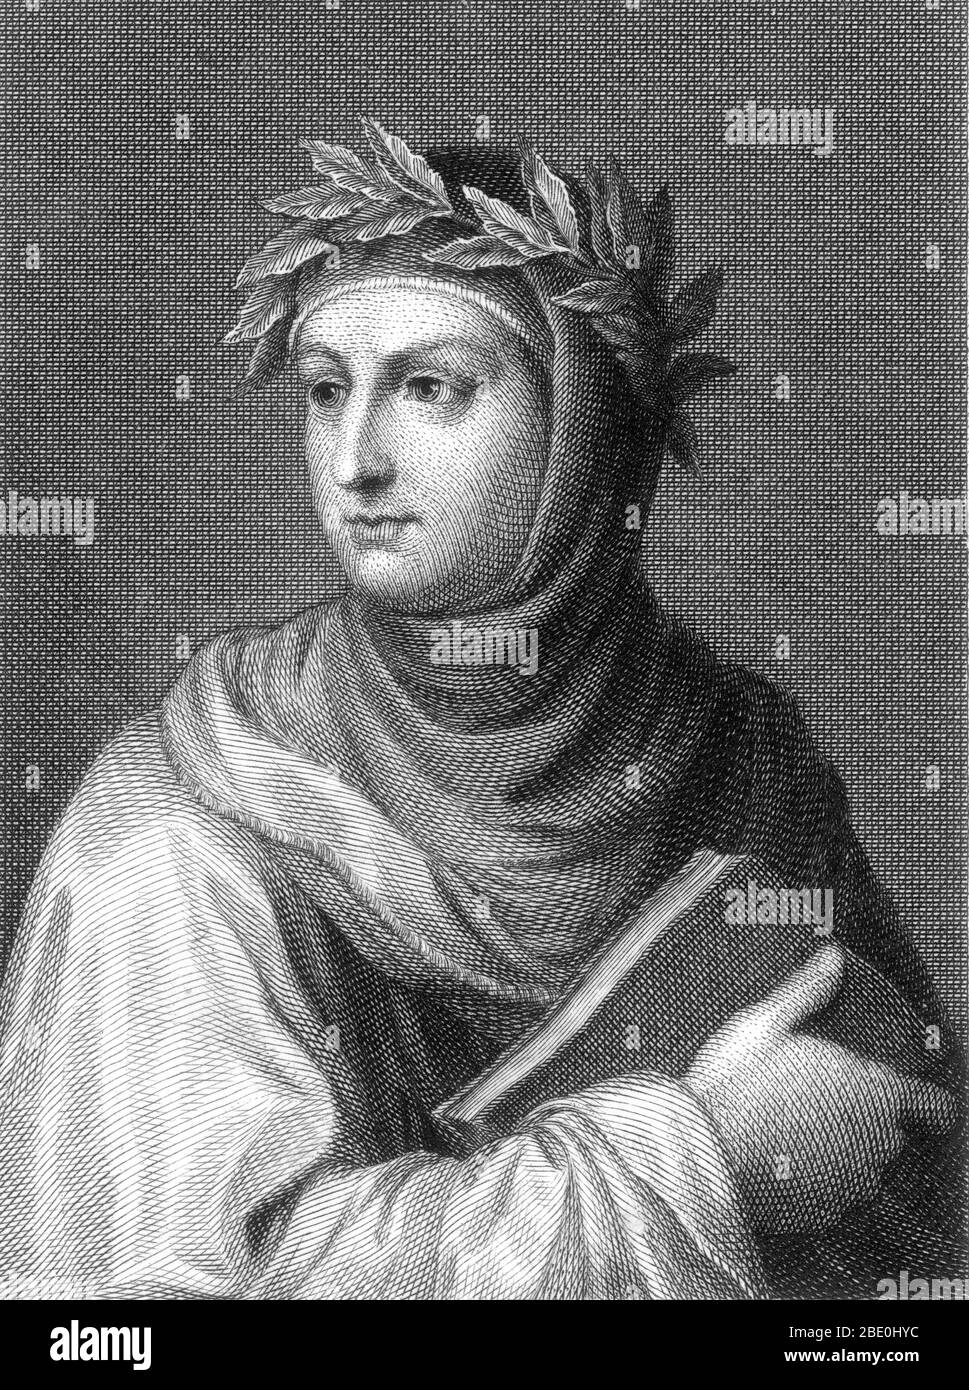 Giovanni Boccaccio (1313 - 21. Dezember 1375) war ein italienischer Schriftsteller, Dichter, Korrespondent von Petrarca und ein bedeutender Humanist der Renaissance. Er war der Sohn eines florentinischen Kaufmanns, Boccaccino di Chellino, und eine unbekannte Frau; er wurde wahrscheinlich aus Ehe geboren. Boccaccio schrieb eine Reihe von bemerkenswerten Werken, darunter die Decameron und über berühmte Frauen. Als Dichter, der in der italienischen Volkssprache schrieb, ist Boccaccio besonders für seinen realistischen Dialog bekannt, der sich von dem seiner Zeitgenossen Unterschied, mittelalterliche Schriftsteller, die meist formelhafte Modelle für Charakter und Handlung folgten. Seine letzten Jahre Stockfoto